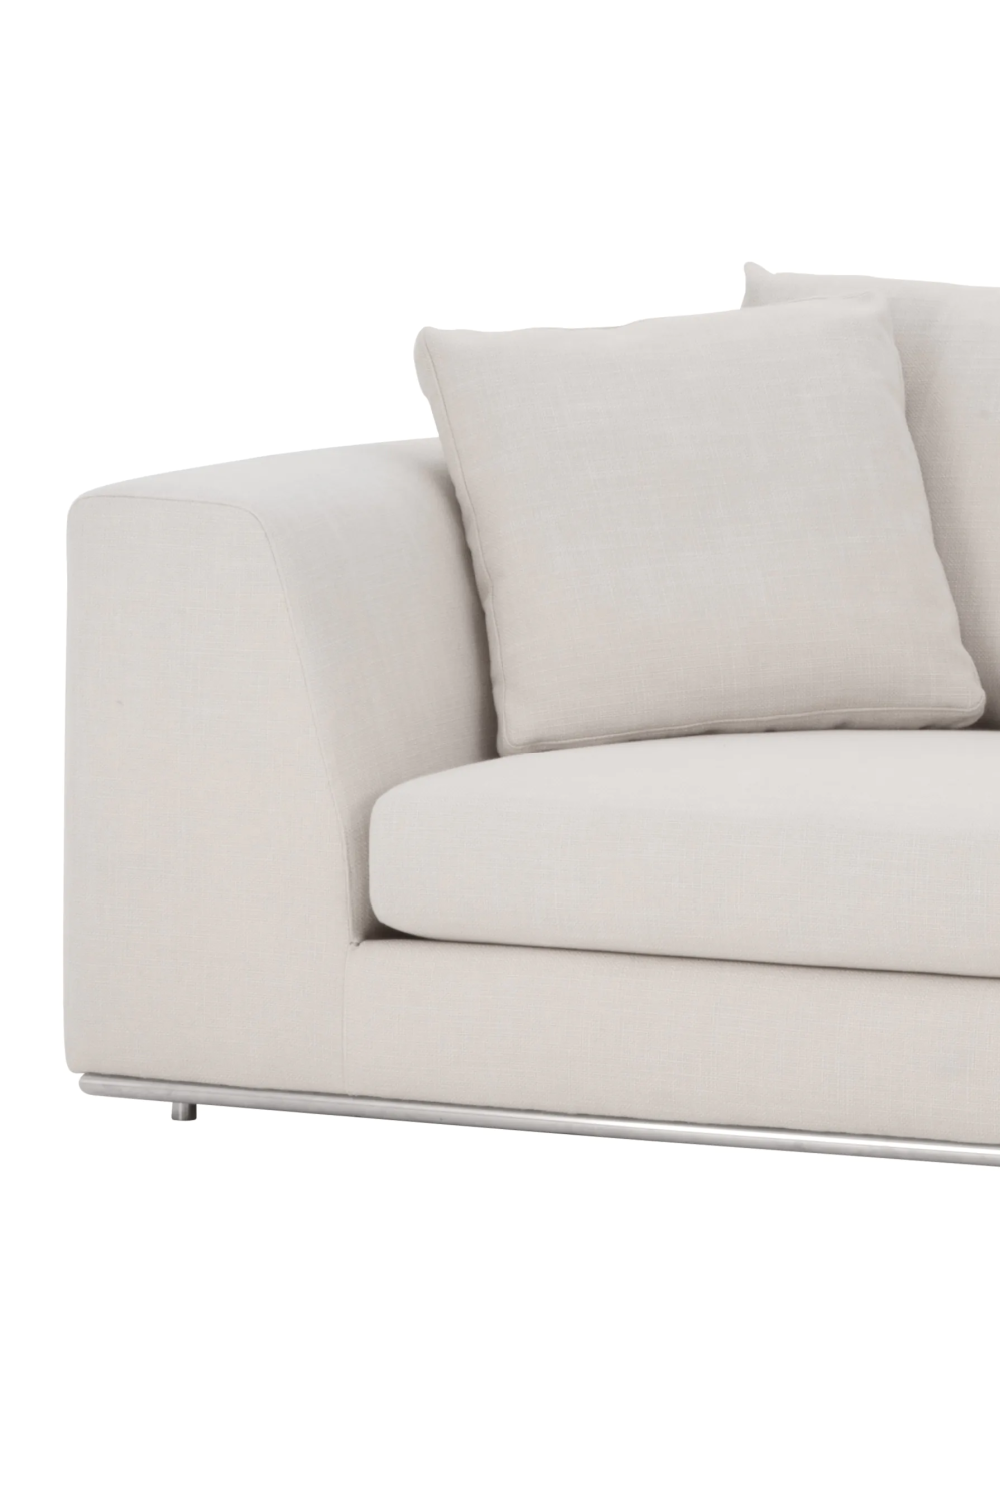 Off-White Contemporary Sofa | Eichholtz Brando | Oroa.com